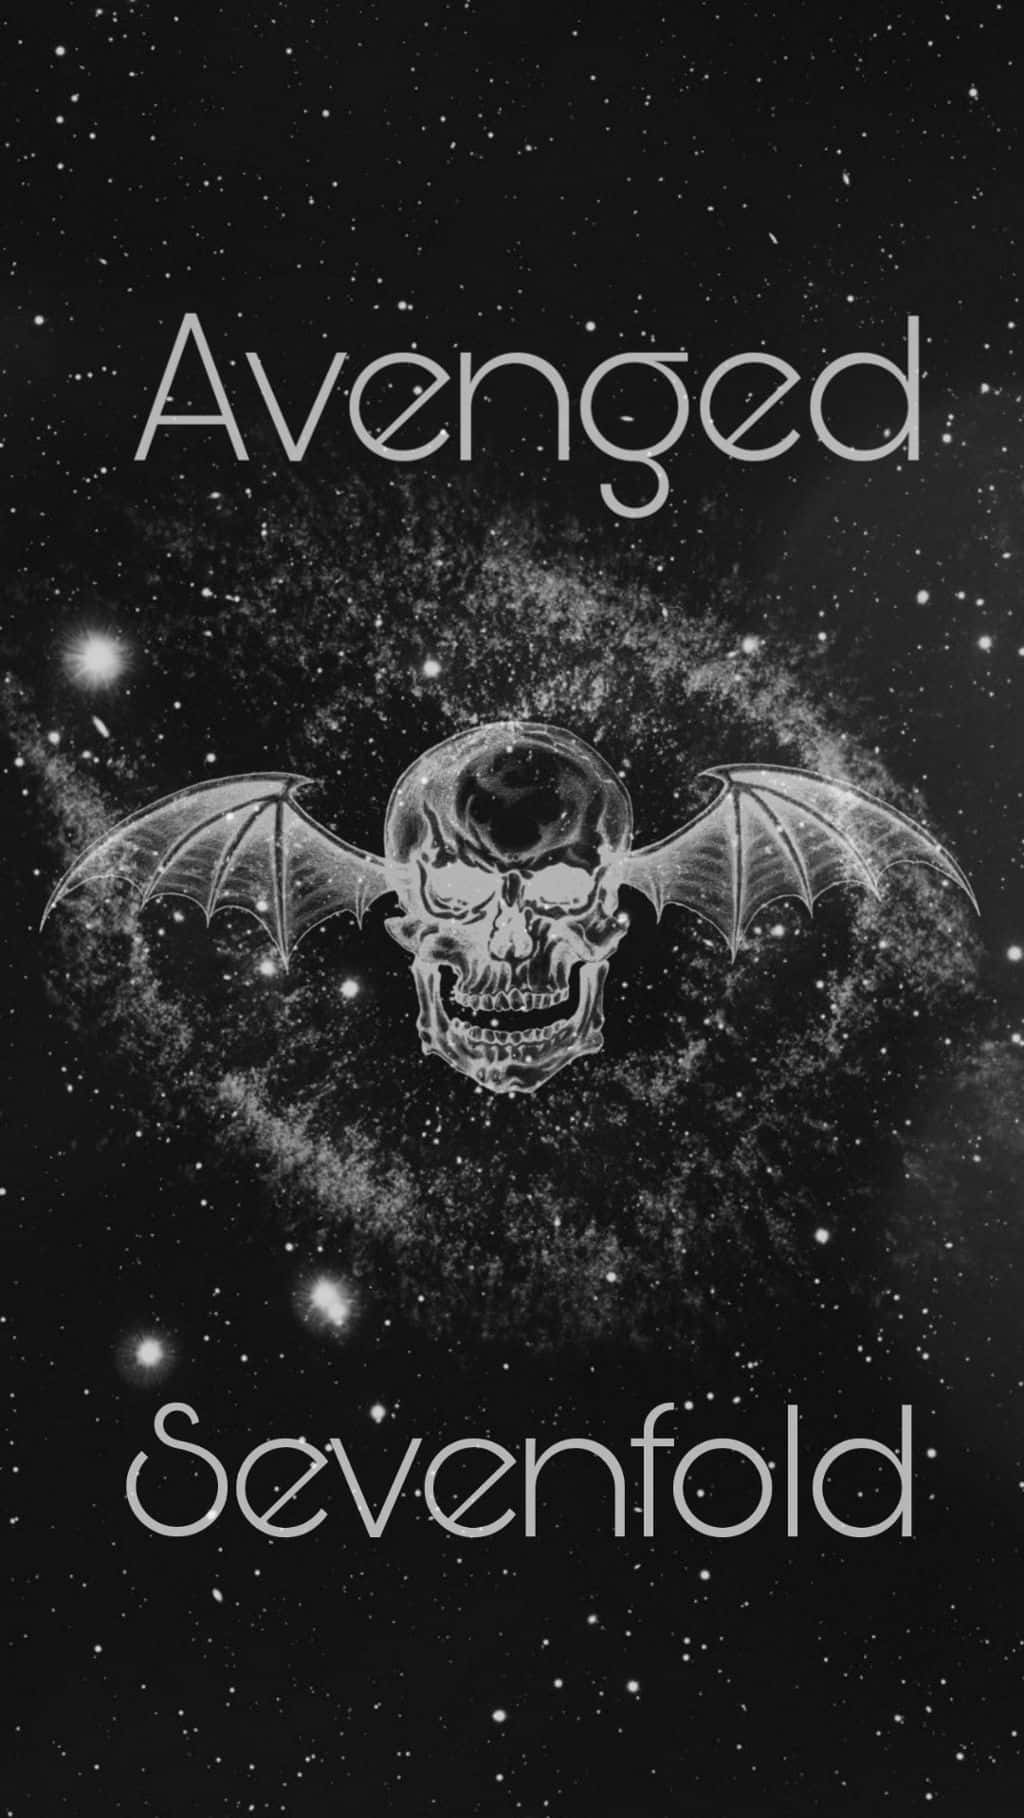 Avengedsevenfold - Annons - Cd-omslagskonst Wallpaper